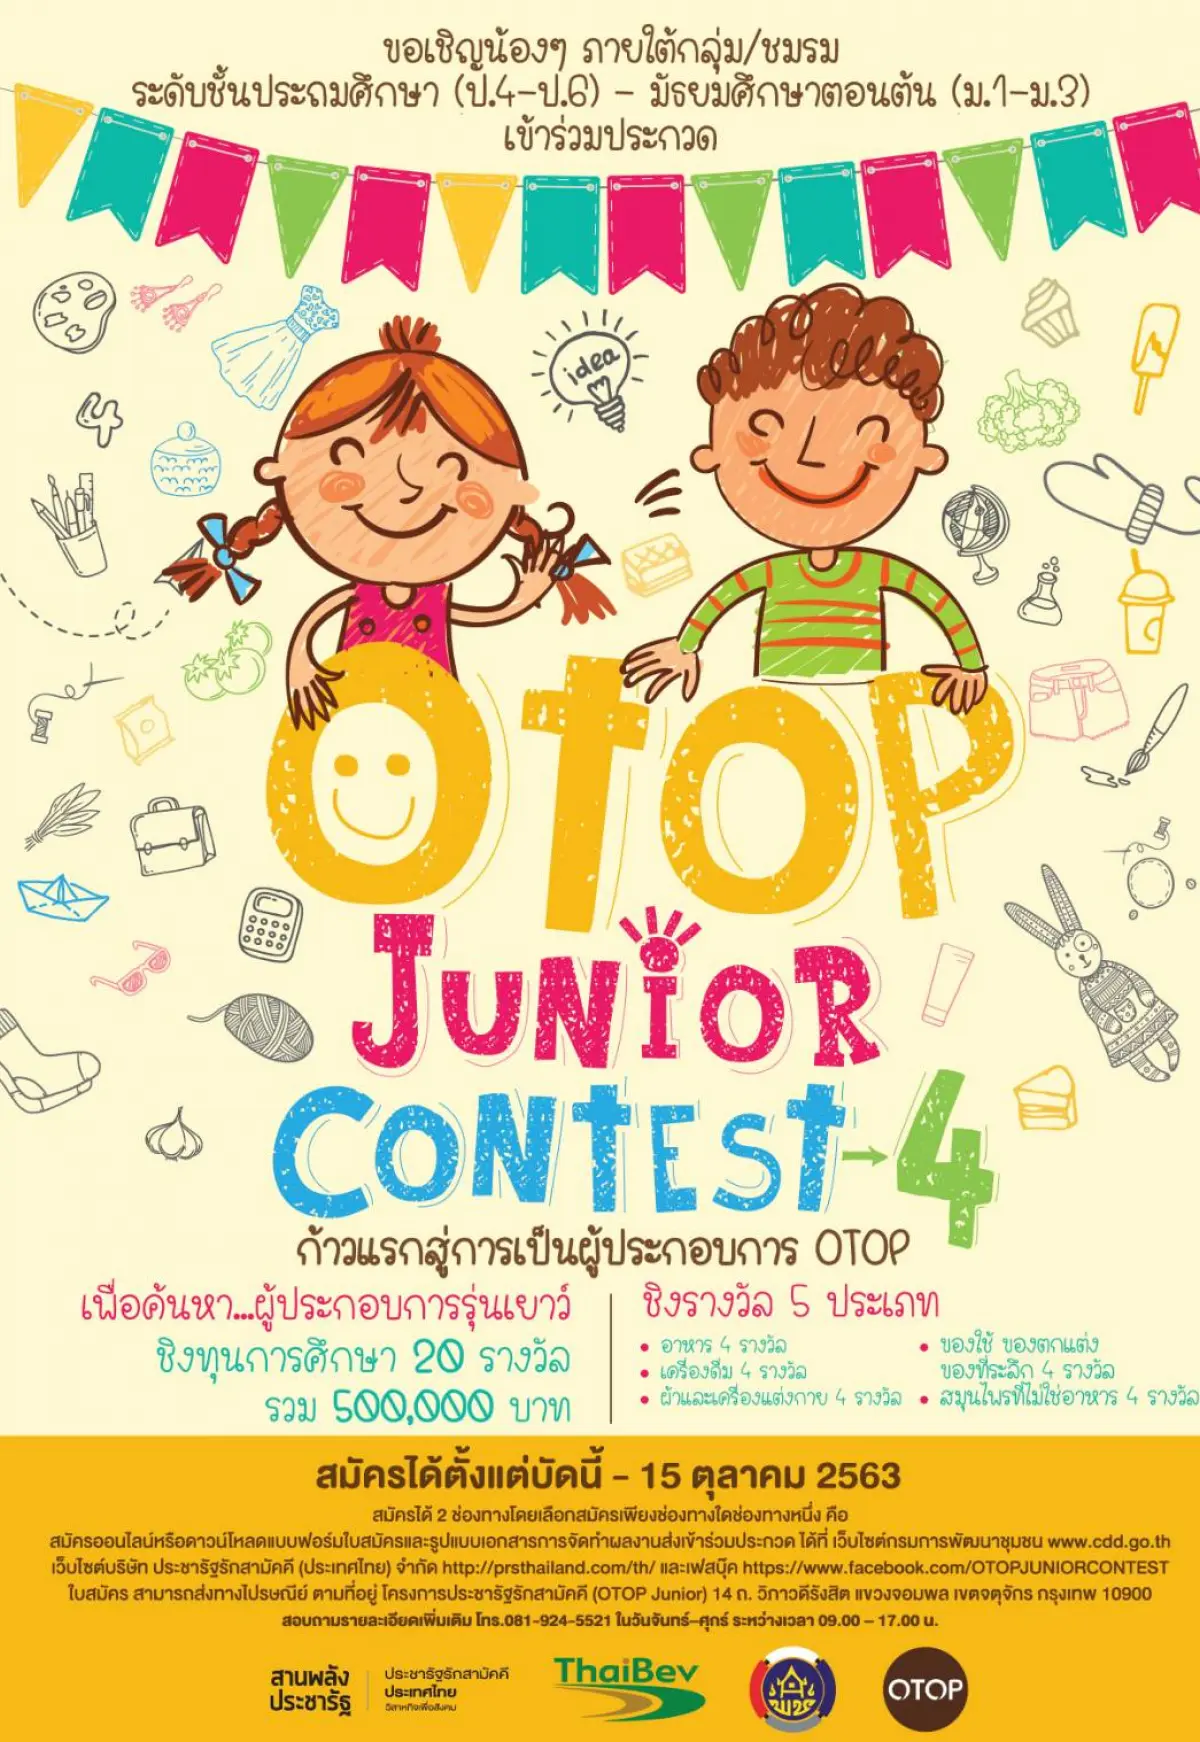 โครงการประกวดโอทอป จูเนียร์ ประจำปี 2563 “OTOP Junior Contest 2020 ส่งใบสมัครได้ตั้งแต่บัดนี้ ถึงวันที่ 15 ตุลาคม 2563